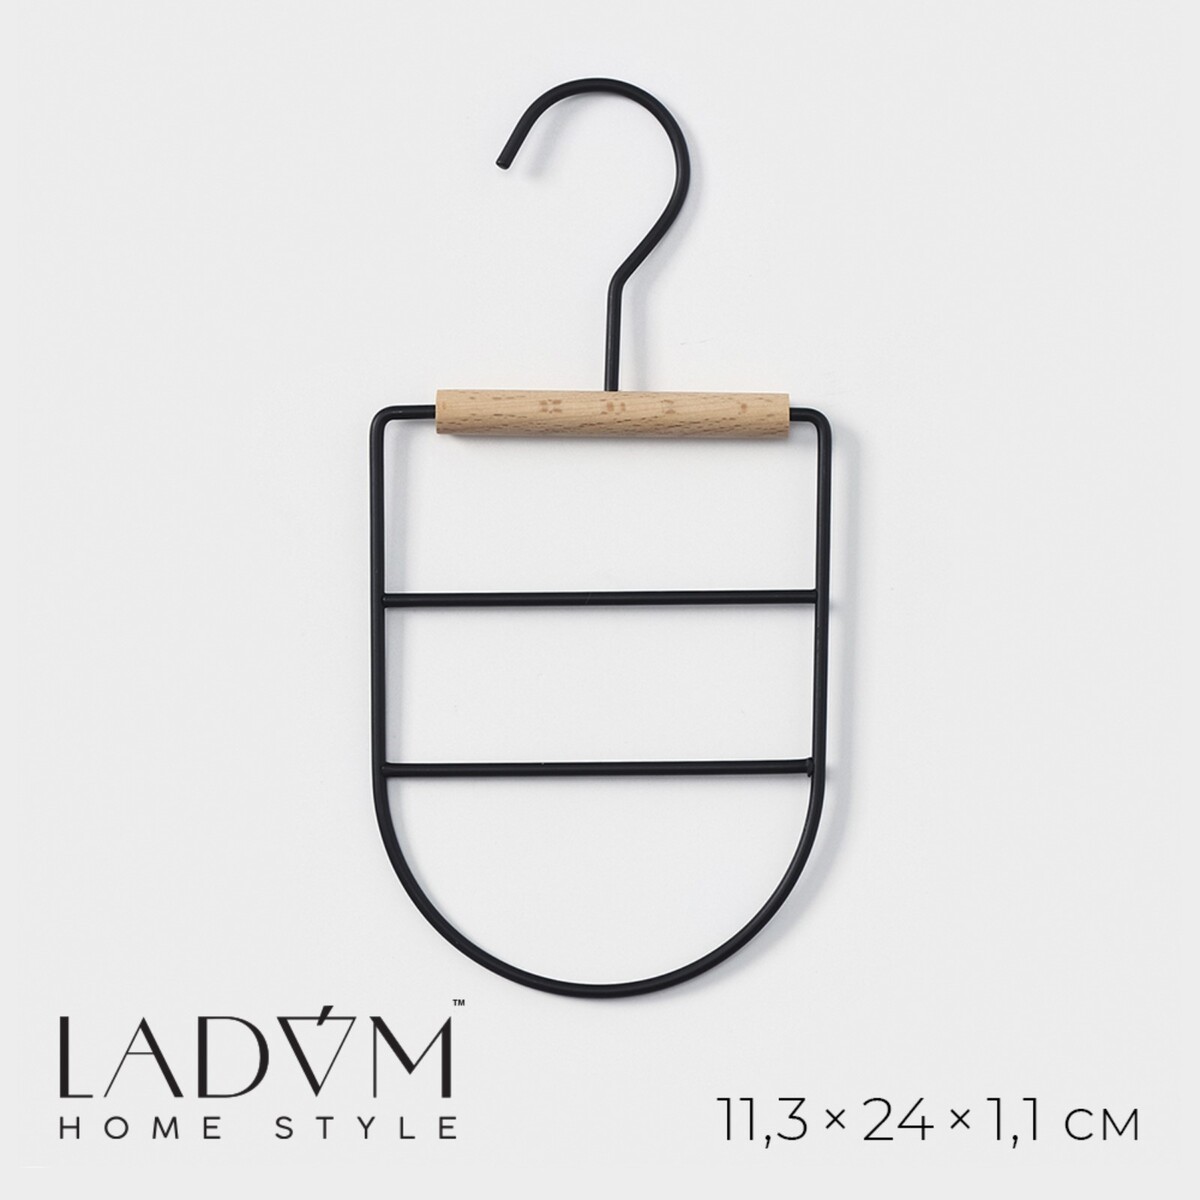 Вешалка органайзер для ремней и шарфов многоуровневая ladо́m laconique, 11,5×23,5×1,1 см, цвет черный вешалка органайзер для ремней и шарфов многоуровневая savanna wood 11 3×24×1 1 см розовый